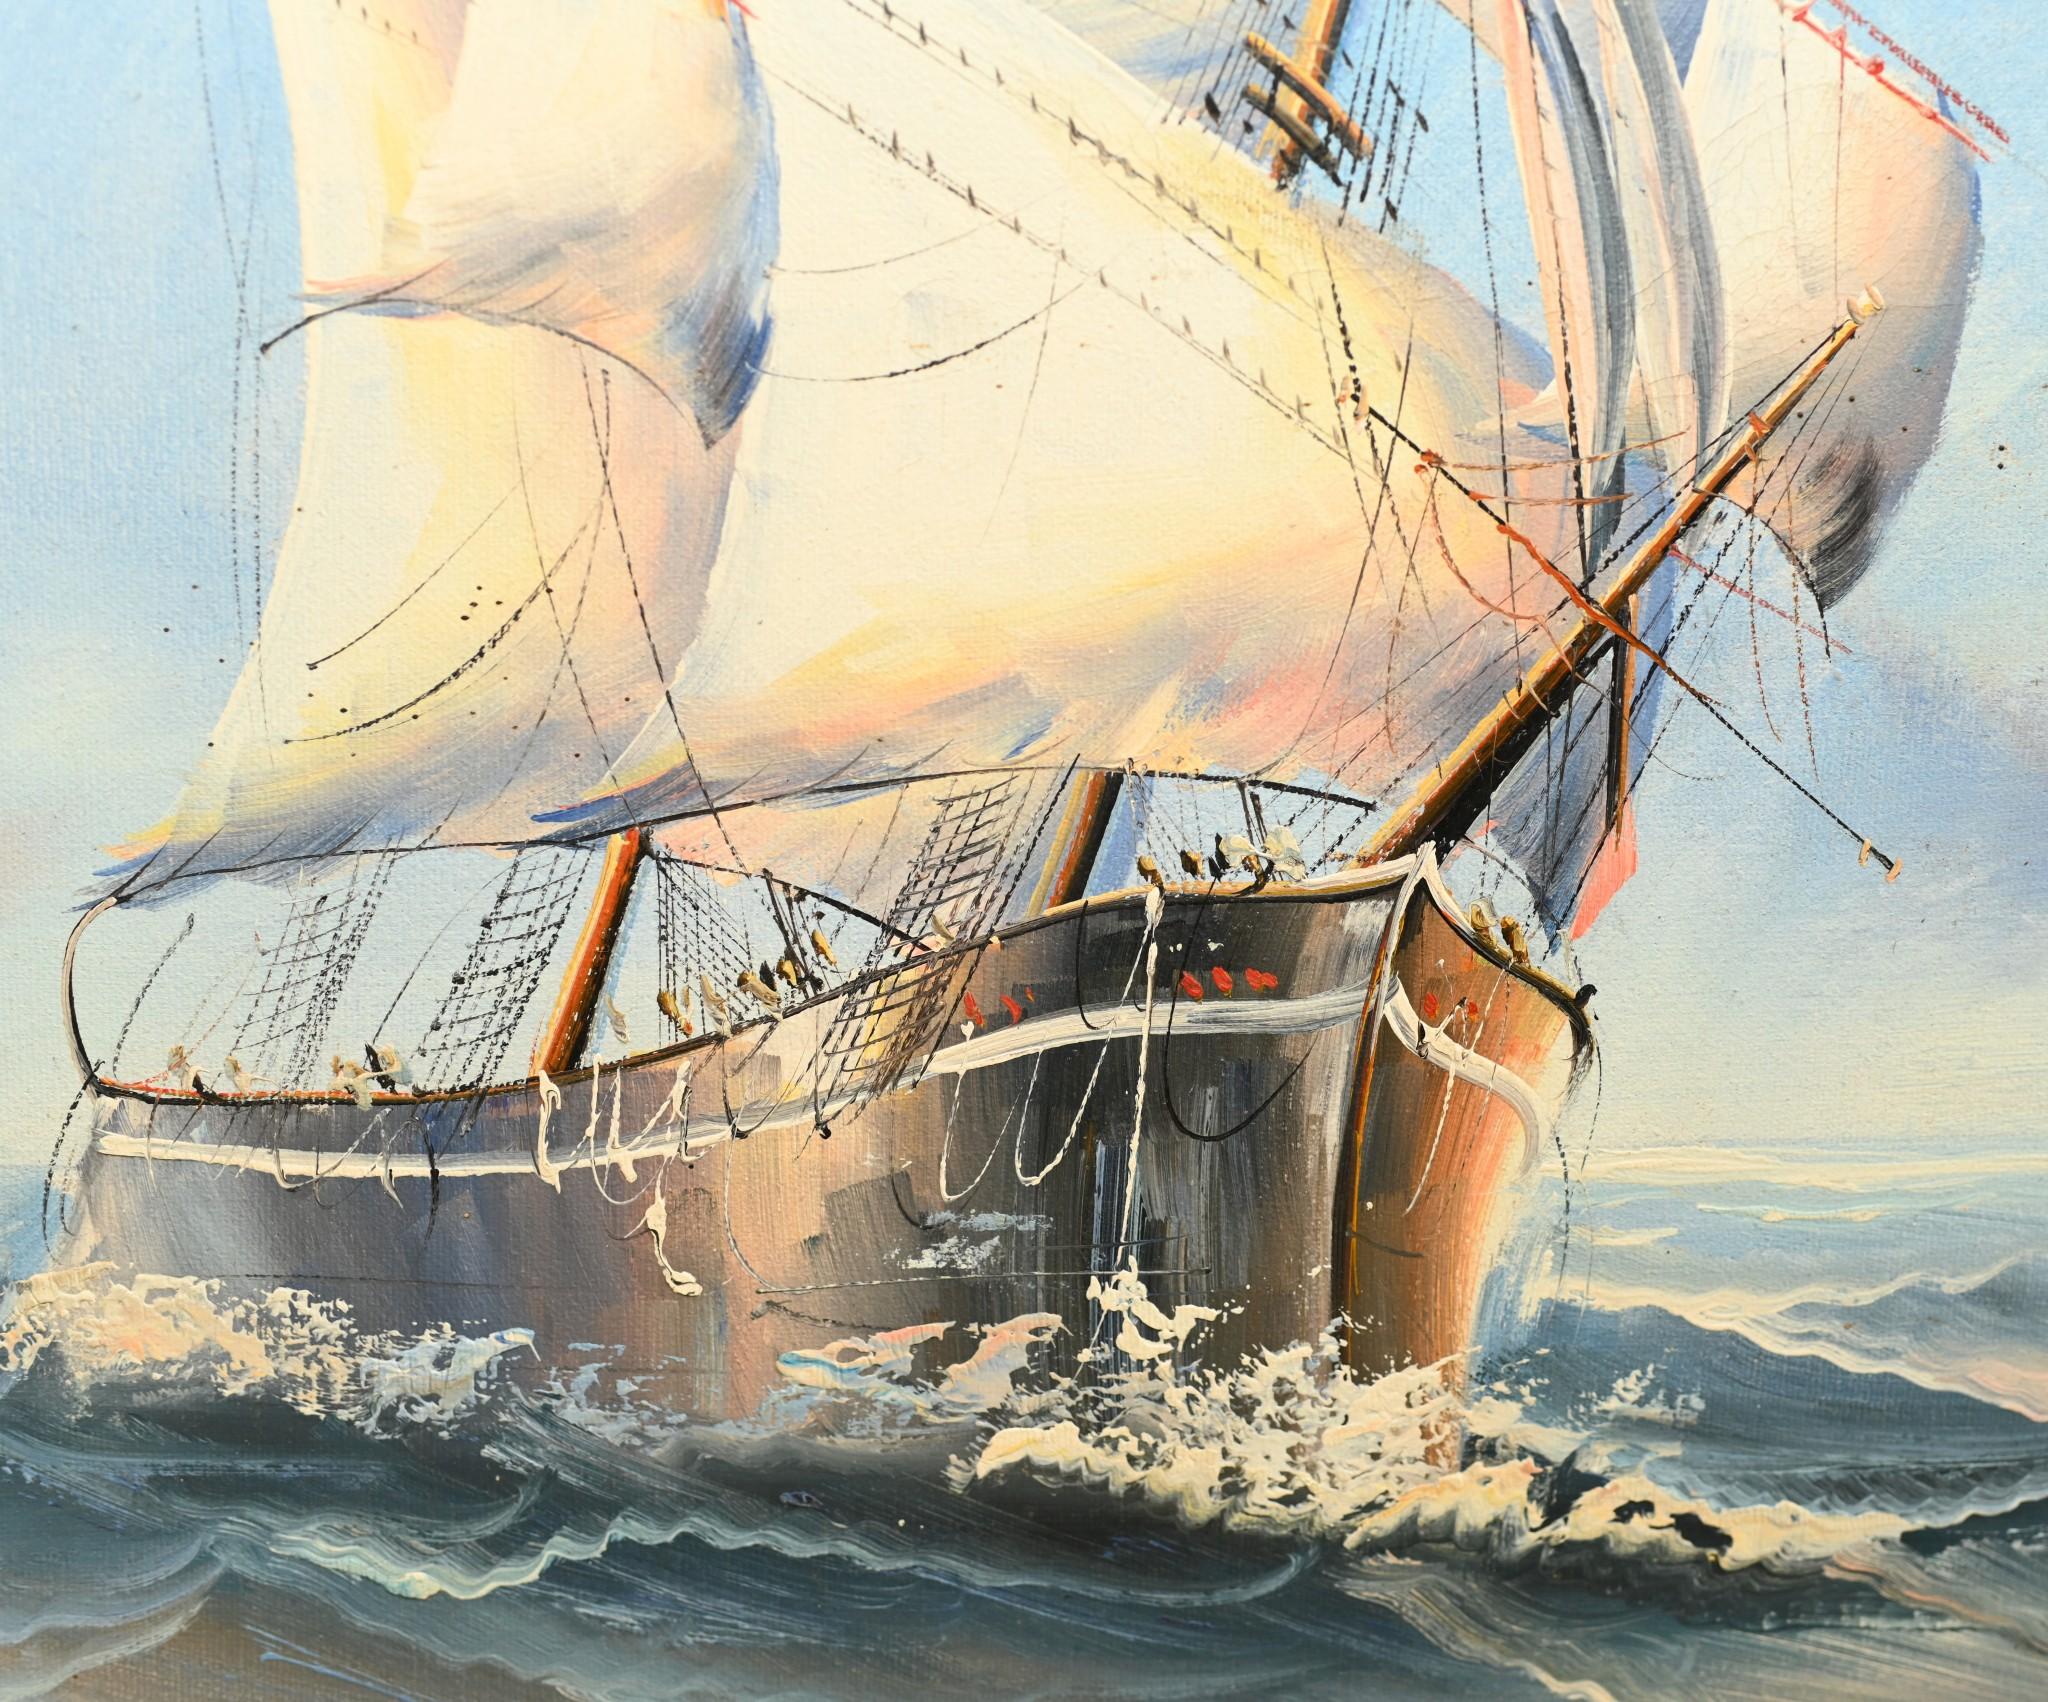 Wunderschönes englisches Ölgemälde eines Schiffes in einem leuchtend blauen Ozean
Künstler hat wirklich die Schönheit der Szene mit großem Geschick eingefangen
Wird im vergoldeten Rahmen geliefert
Das Stück ist in der rechten unteren Ecke mit J